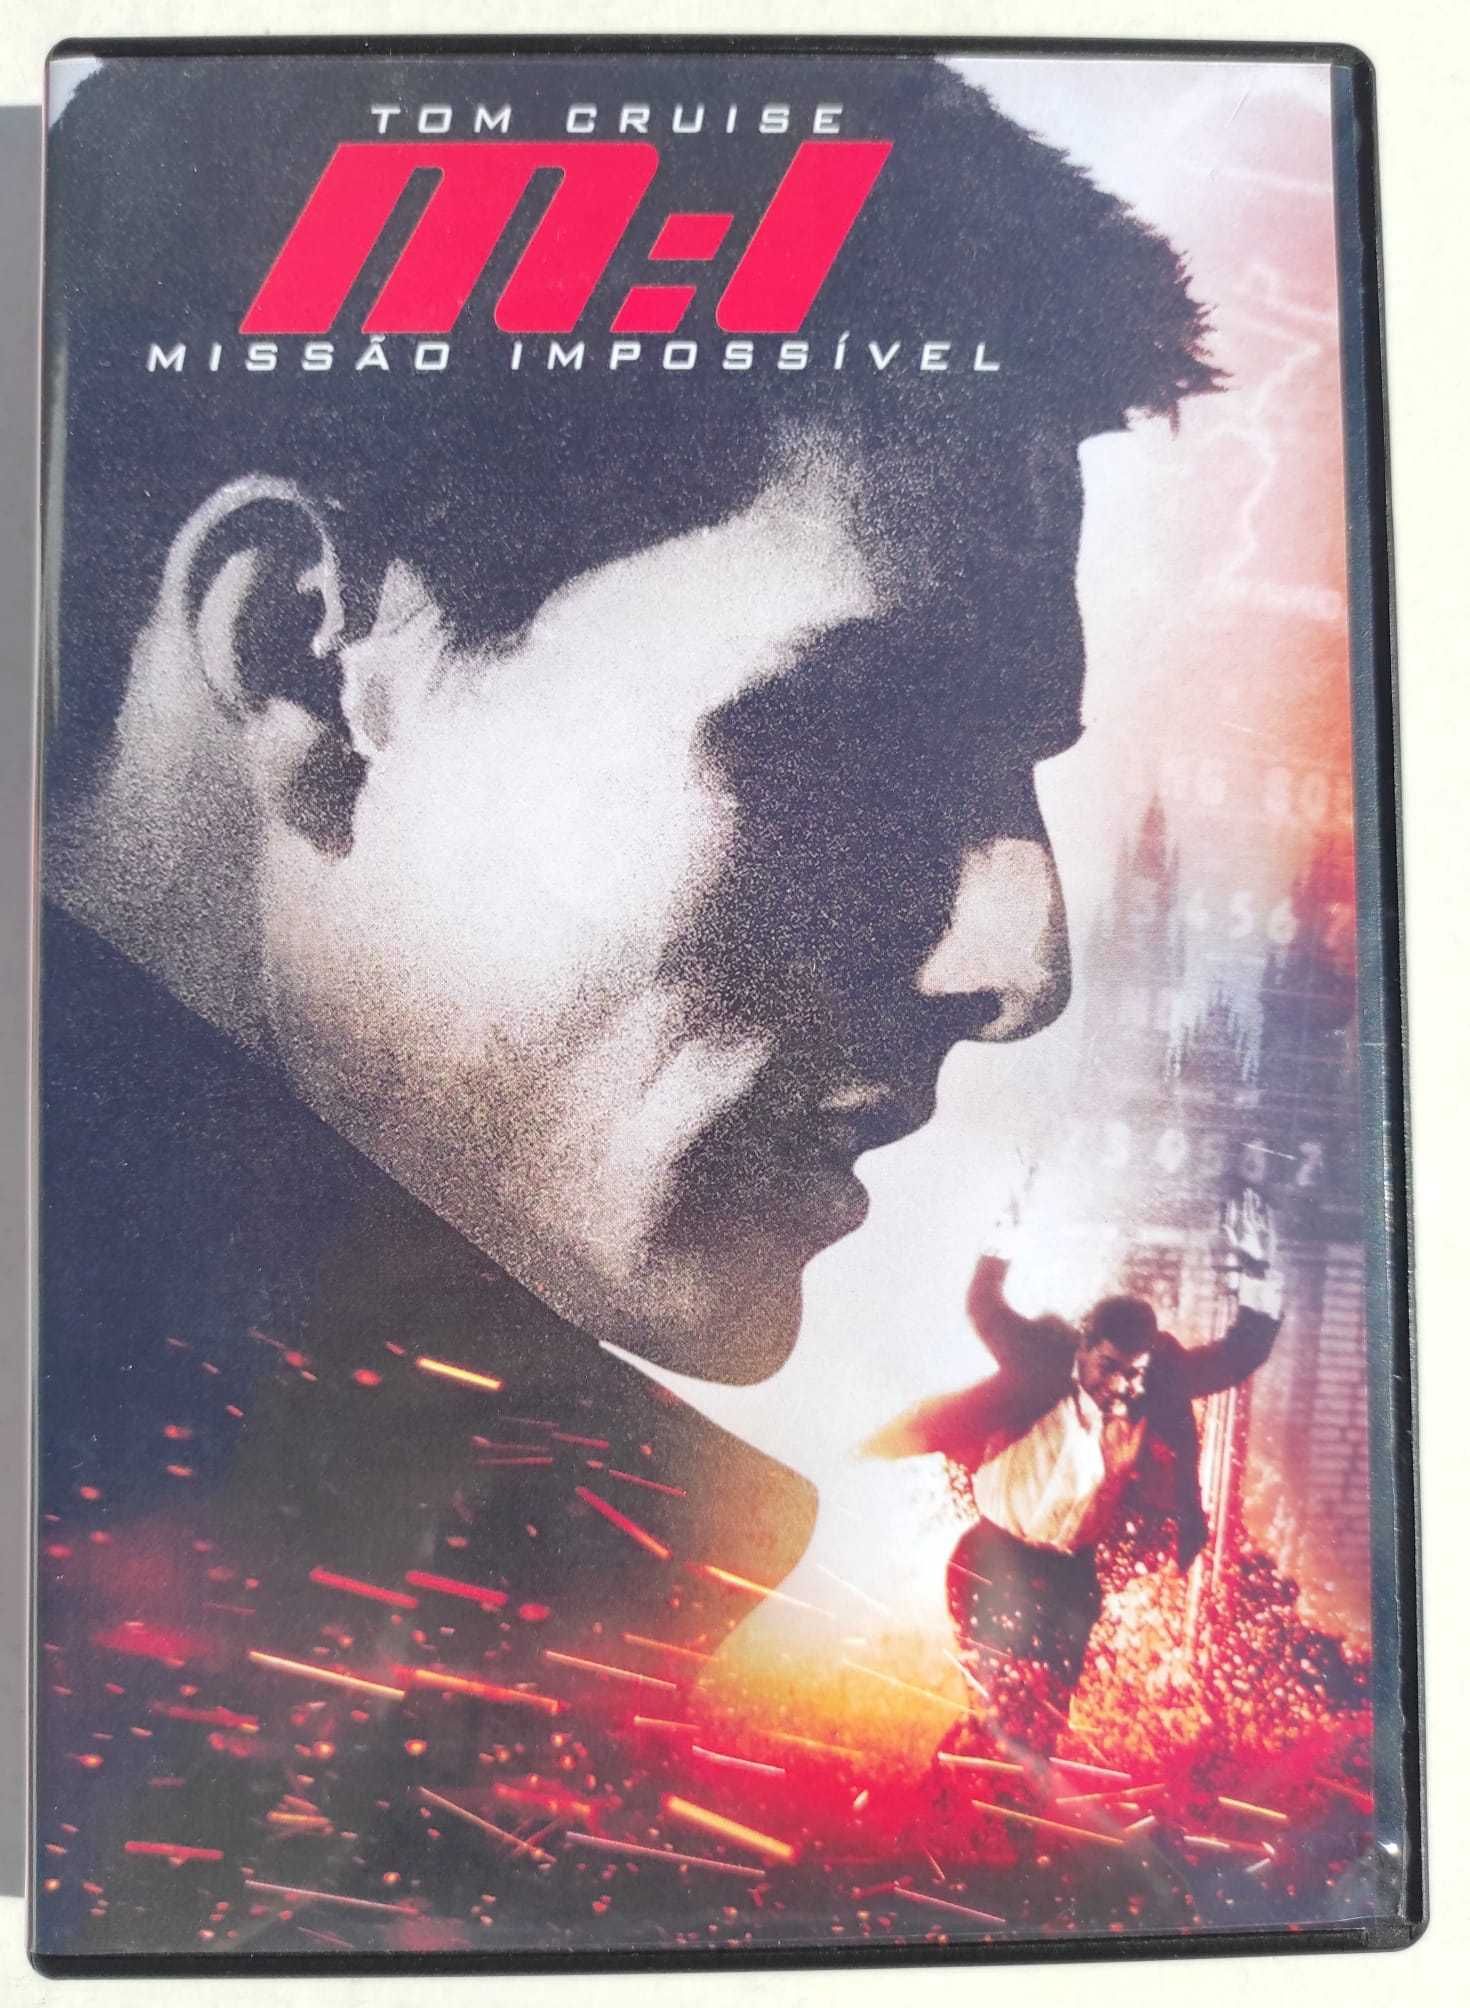 caixa de quatro dvd "Missão impossível", com Tom Cruise